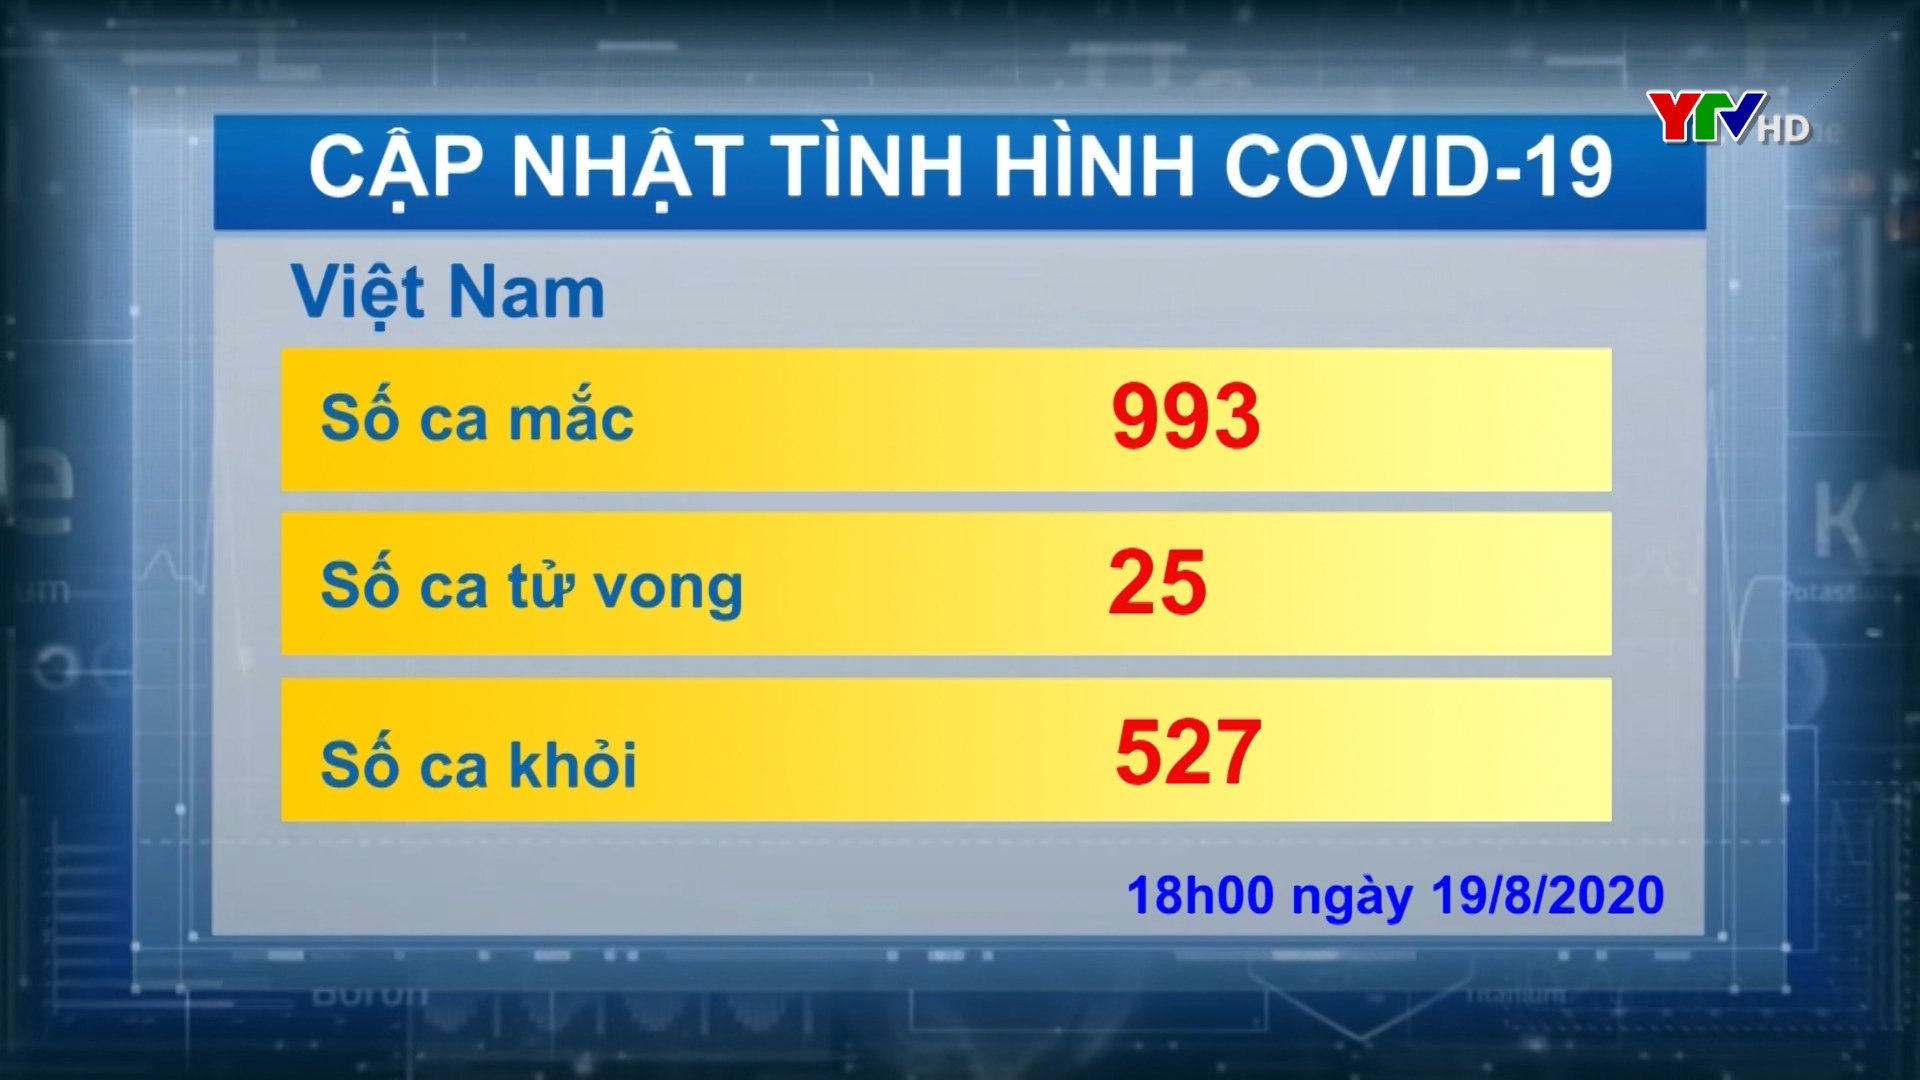 Việt Nam ghi nhận tổng số 993 ca nhiễm COVID - 19